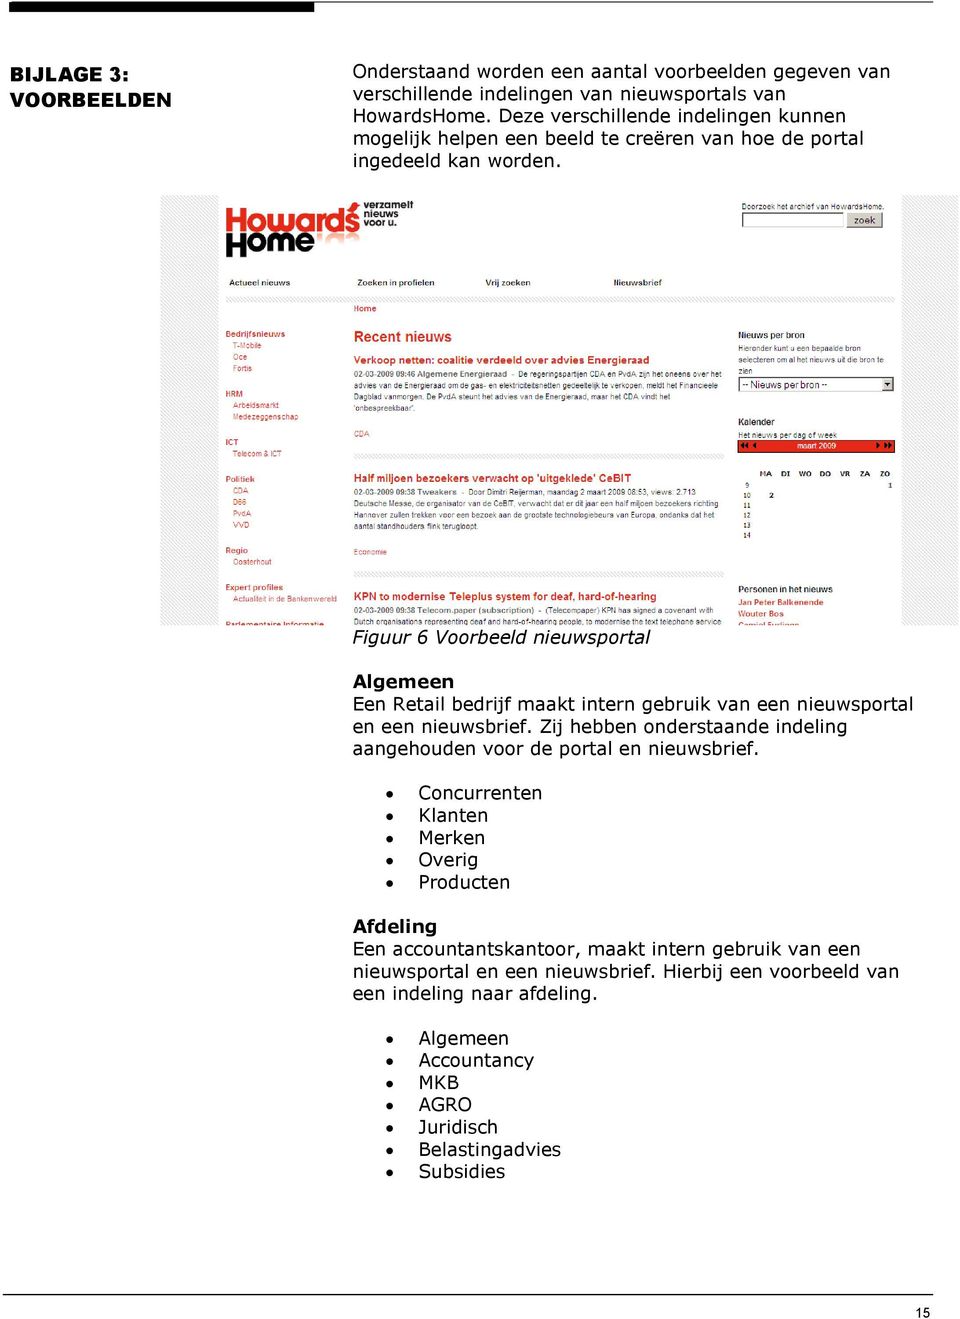 Figuur 6 Voorbeeld nieuwsportal Algemeen Een Retail bedrijf maakt intern gebruik van een nieuwsportal en een nieuwsbrief.